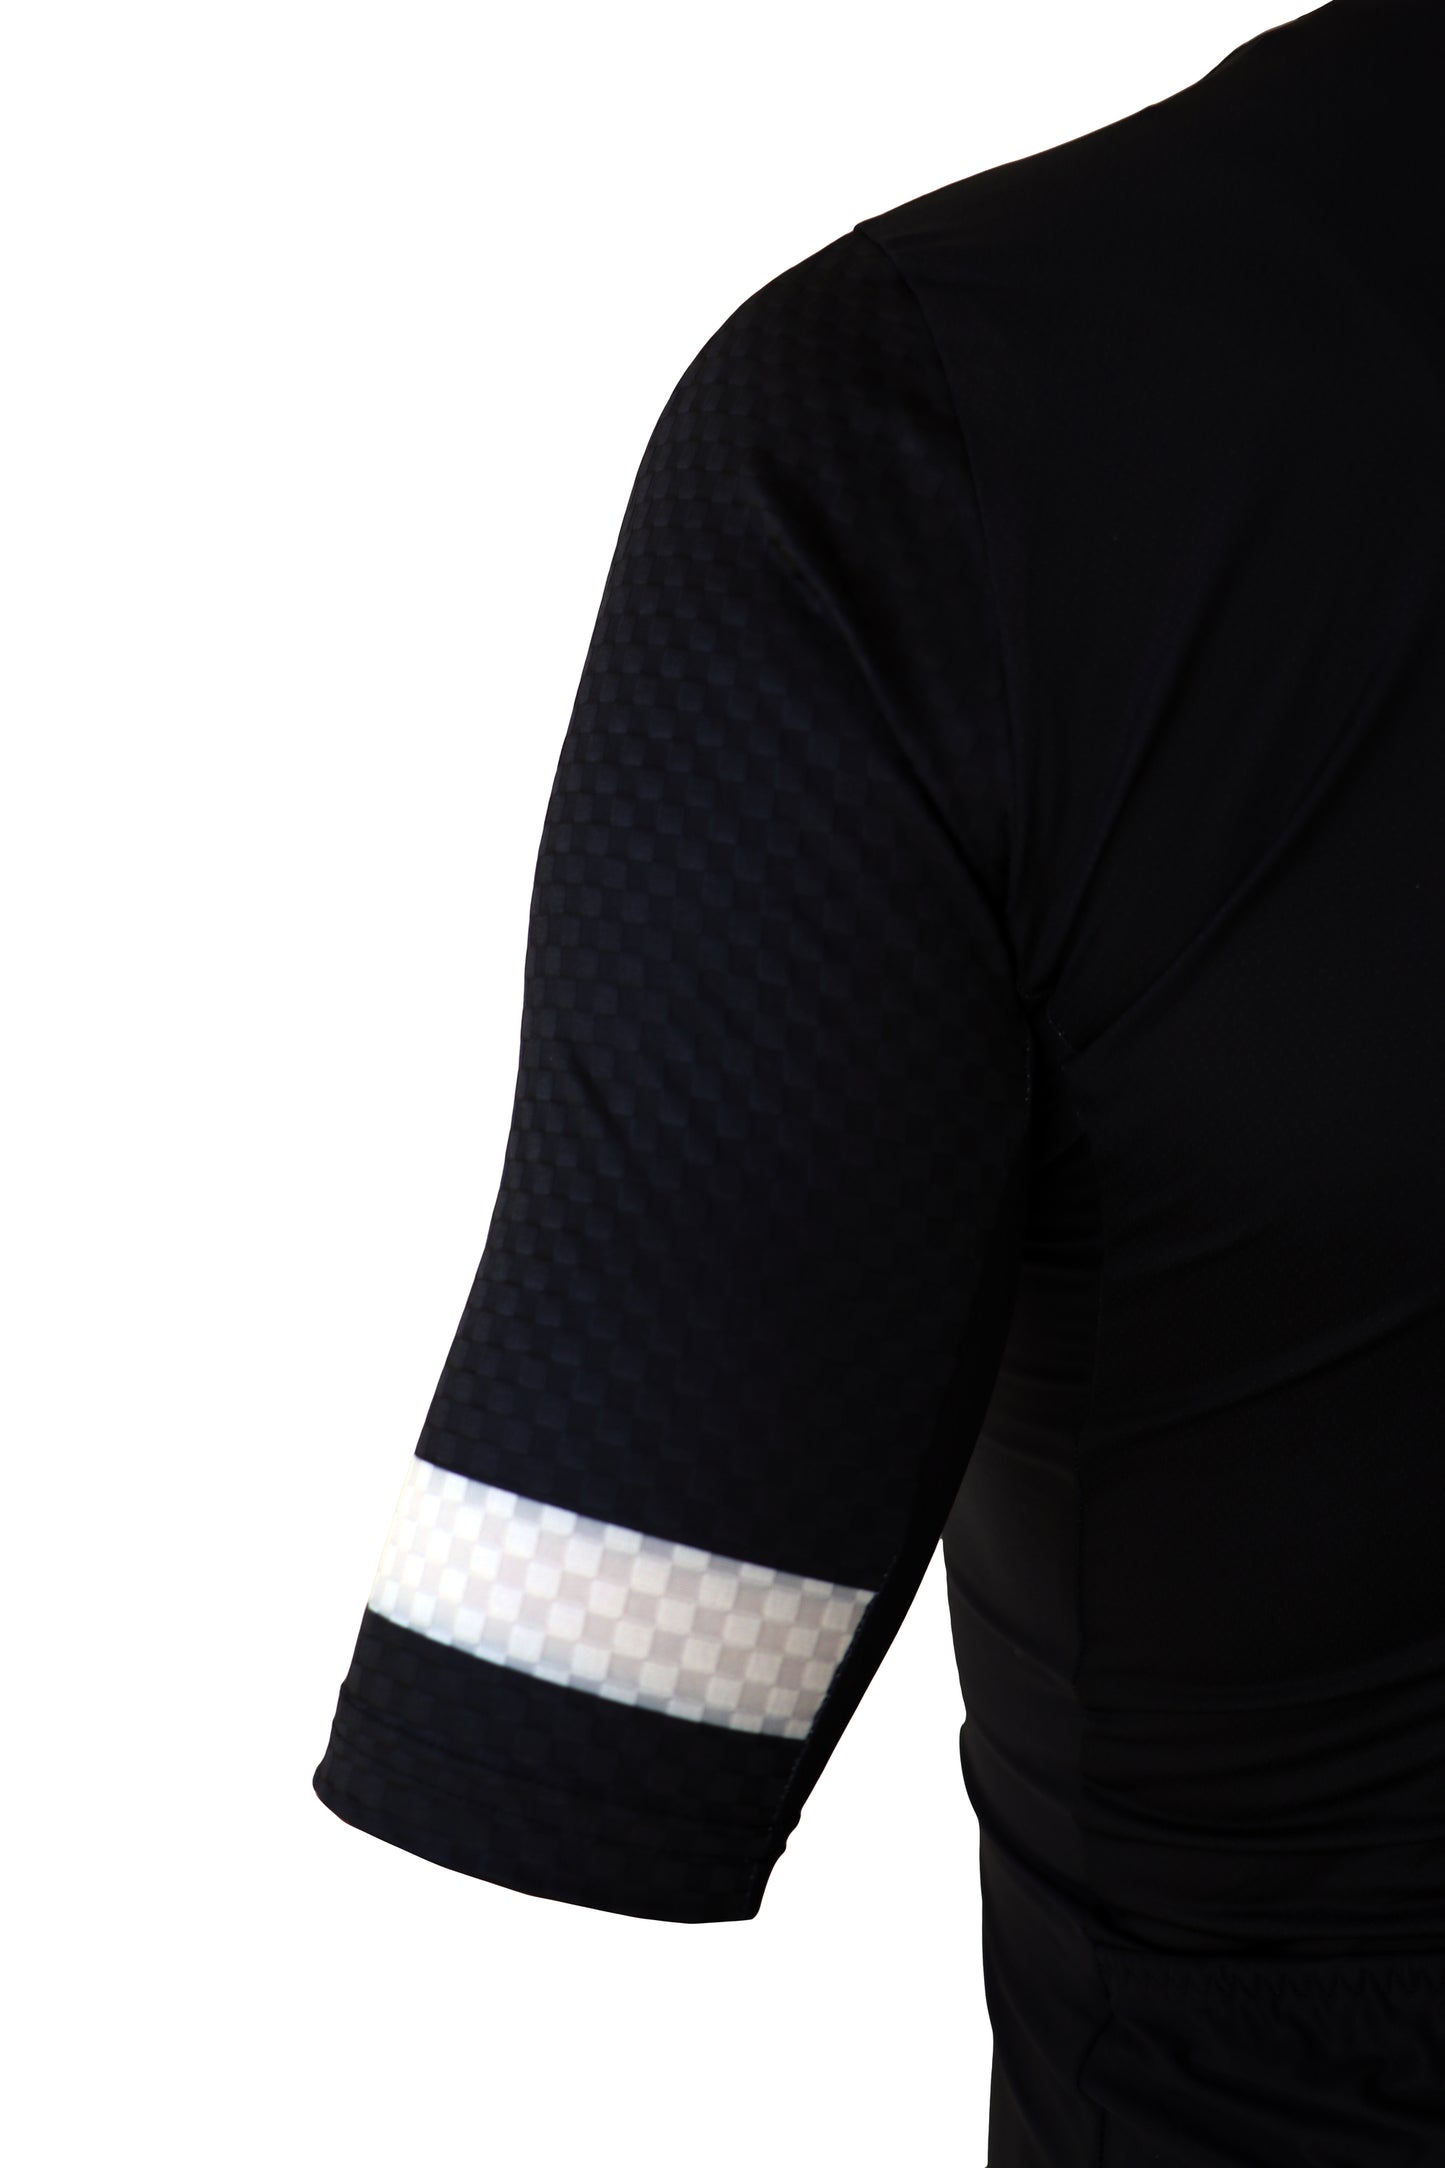 Bici textil-jersey corto con ejercicio, blanco y negro